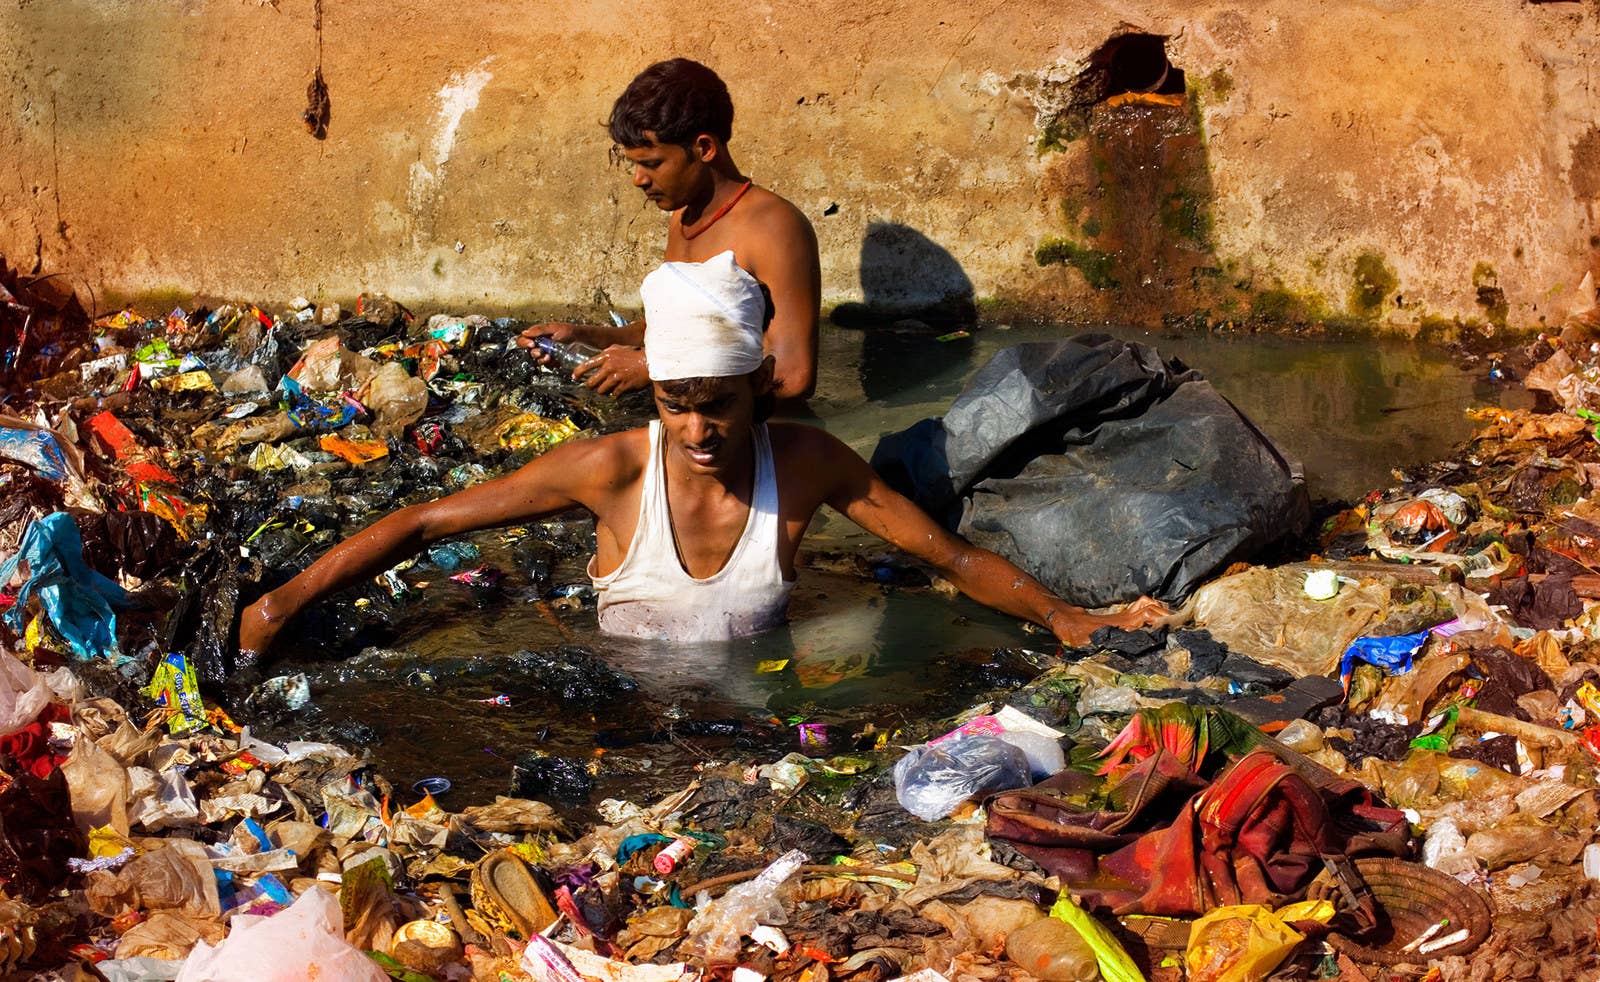 インド・ムンバイで、汚染された川に浮かぶゴミを漁る男性。この川は市民から下水溝のように扱われており、生ゴミ、産業廃棄物、その他様々なゴミが見境なく捨てられている。(2013年1月24日)